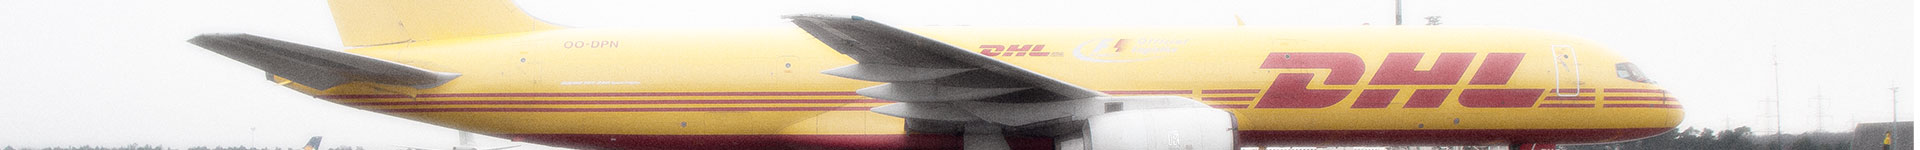 DHL (European Air Transport)